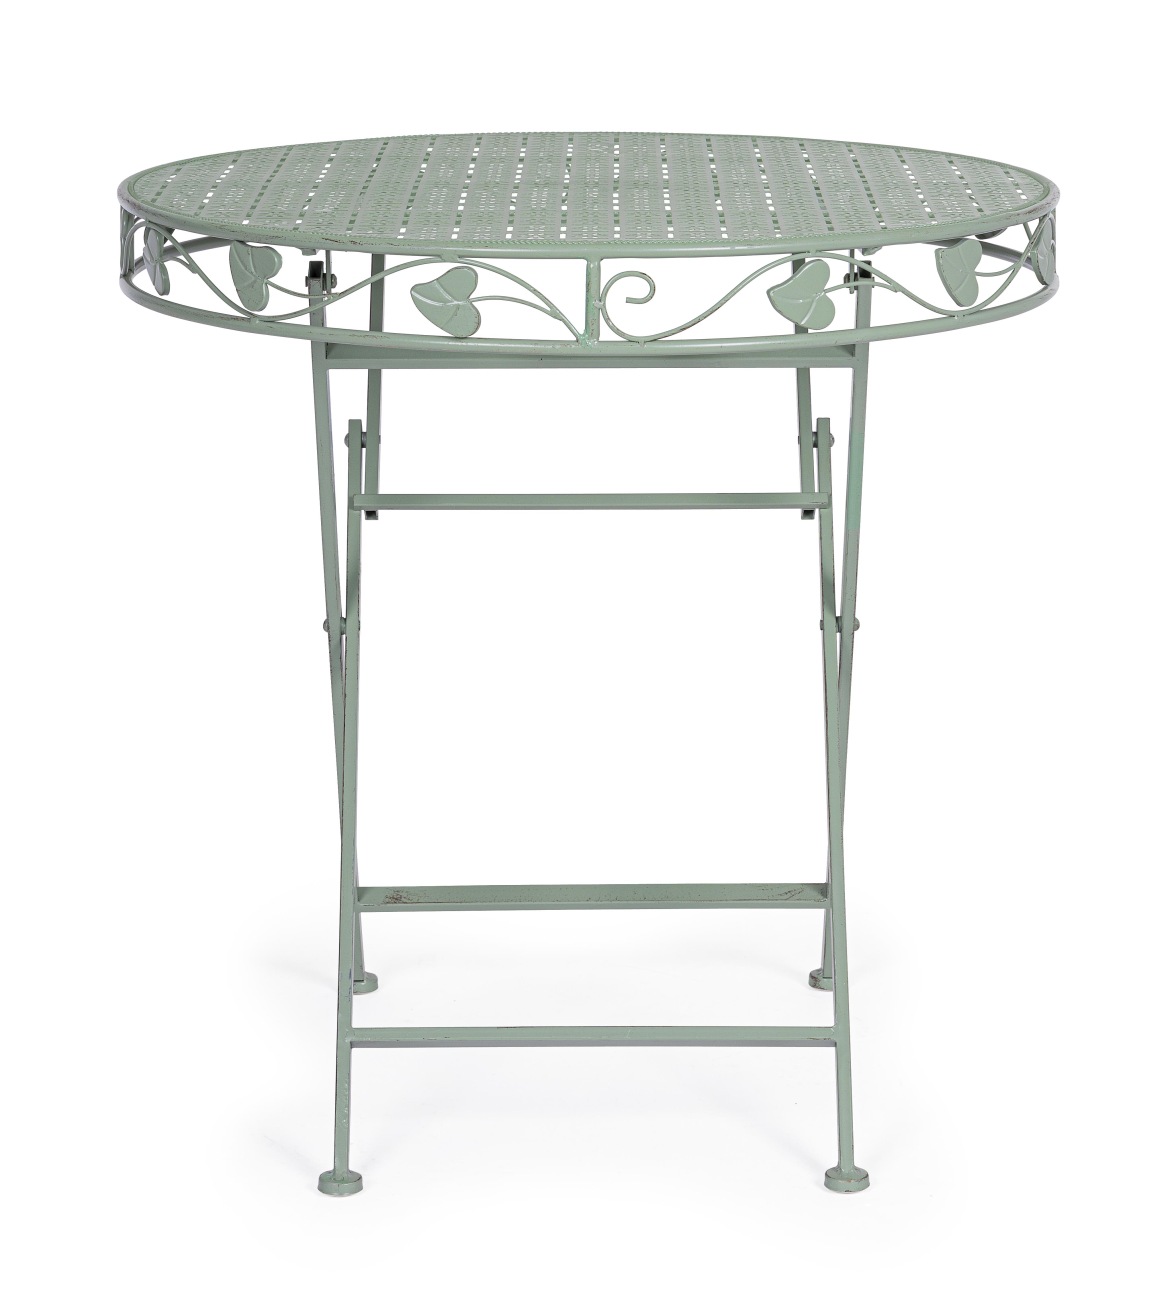 Der Gartentisch Harriet überzeugt mit seinem modernen Stil. Gefertigt wurde er aus Metall, welches einen salbei Farbton besitzt. Das Gestell ist auch aus Metall und hat eine Salbei Farbe. Der Tisch besitzt einen Durchmesser von 70 cm